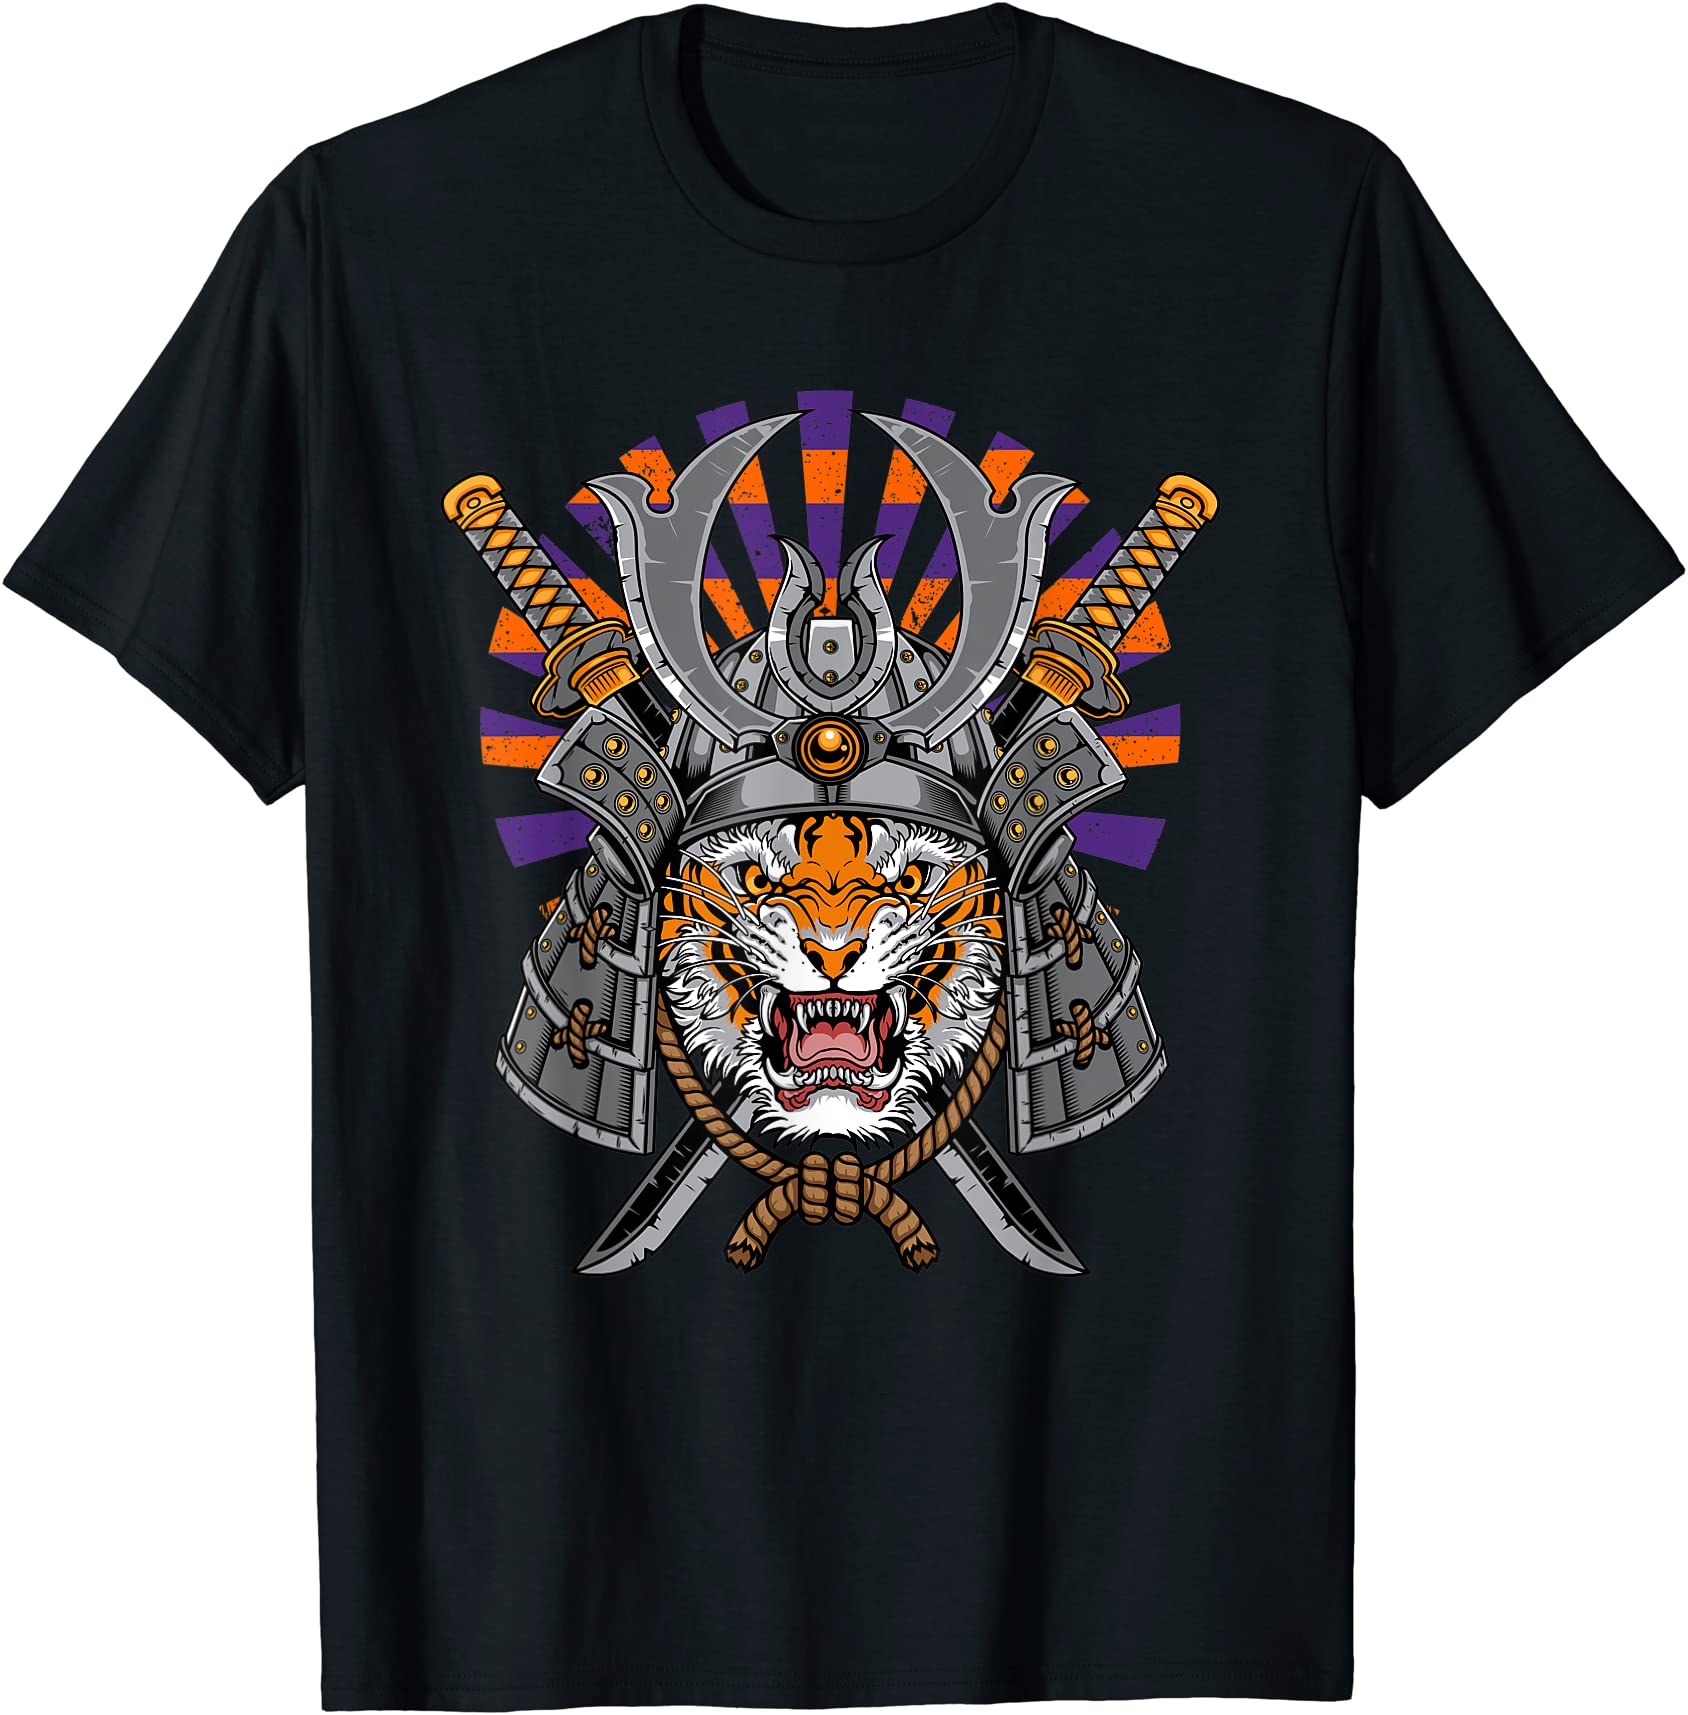 tiger samurai tiger japanese t shirt men - Buy t-shirt designs